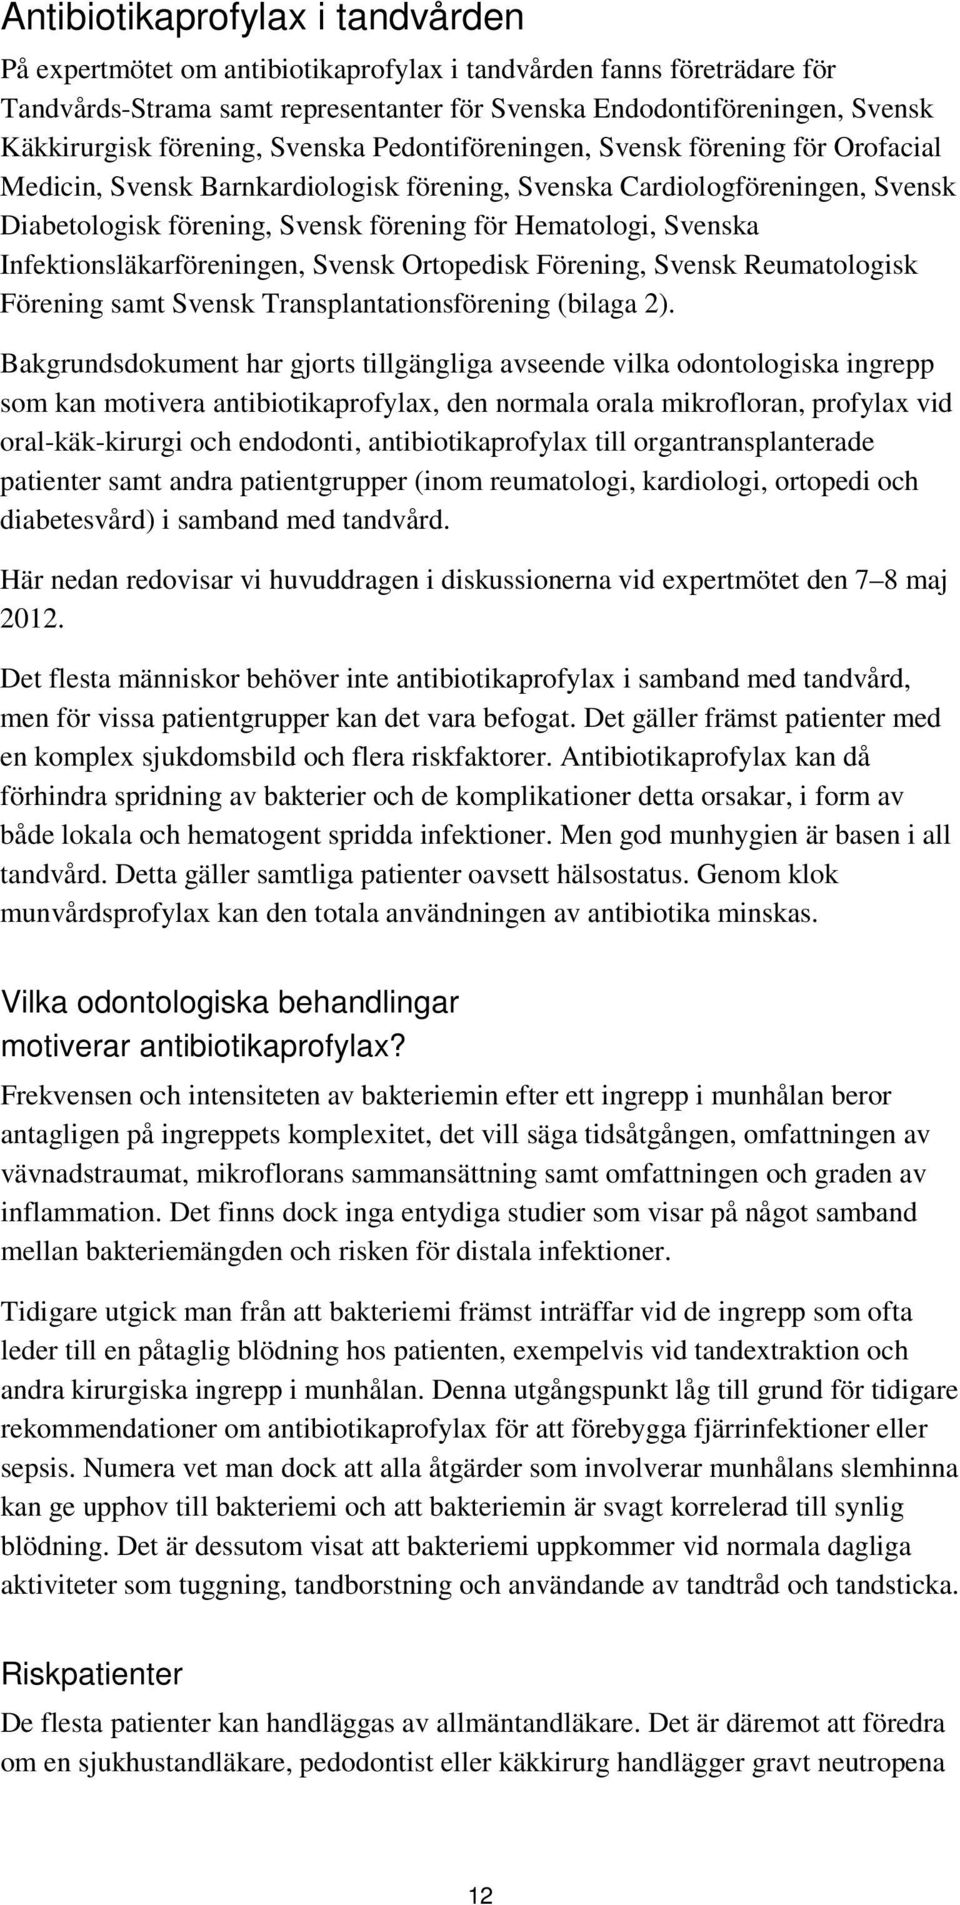 Hematologi, Svenska Infektionsläkarföreningen, Svensk Ortopedisk Förening, Svensk Reumatologisk Förening samt Svensk Transplantationsförening (bilaga 2).